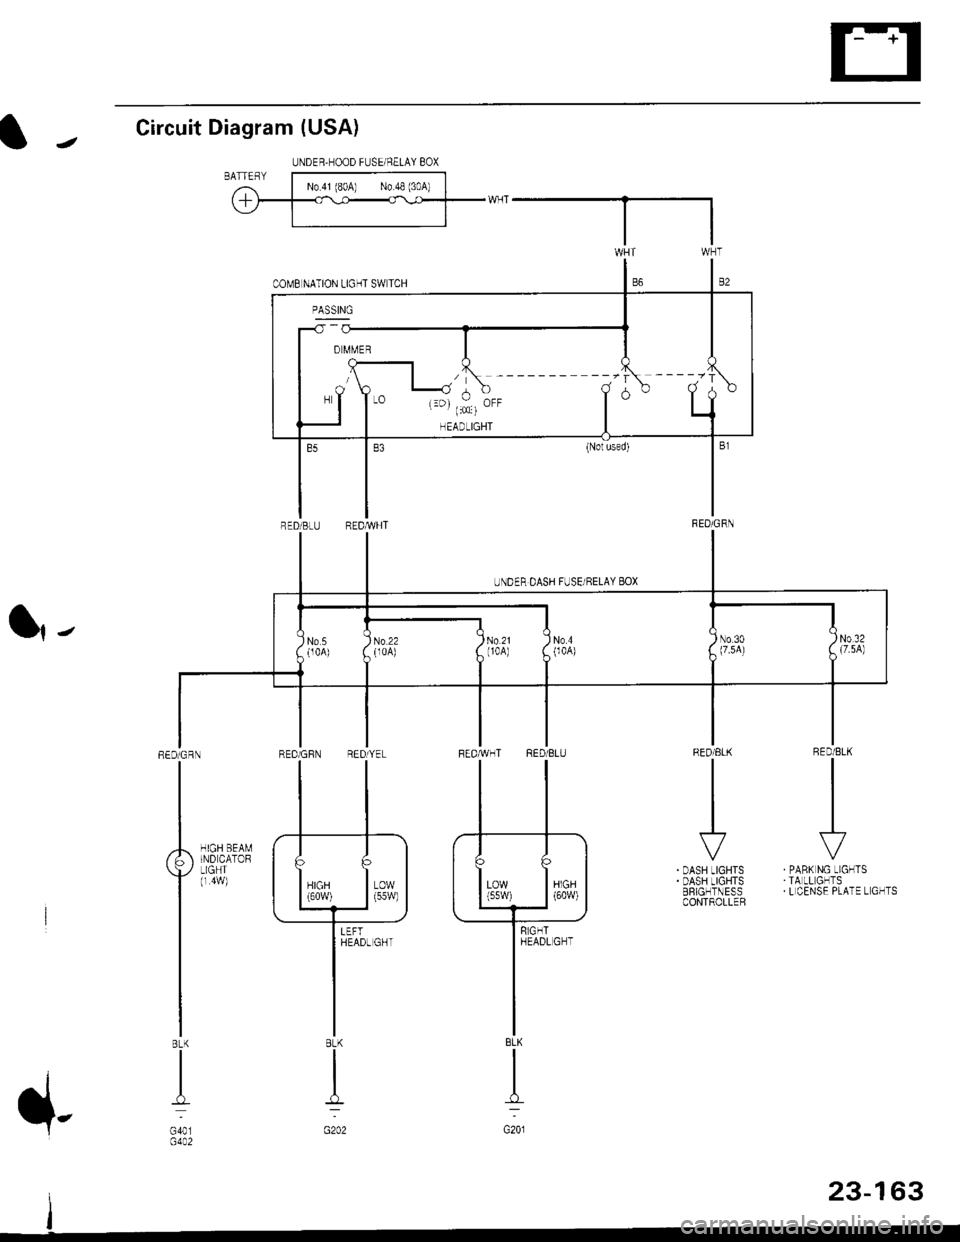 HONDA CIVIC 1998 6.G Workshop Manual Circuit Diagram (USA)
l|-
RED/BLK
II
I
\?
PABK NG LIGHTSTA LL GHTSL CENSE PLATE L GHTS
RED/ELK
III
I
r
DASH LIGHTSDASH LIGHTSERIGHTNESSCONTROLLER
HIGH BEAMIND CATORLIGHT(r 4w)
REDiGRN
I
BLK
I
G401G4A